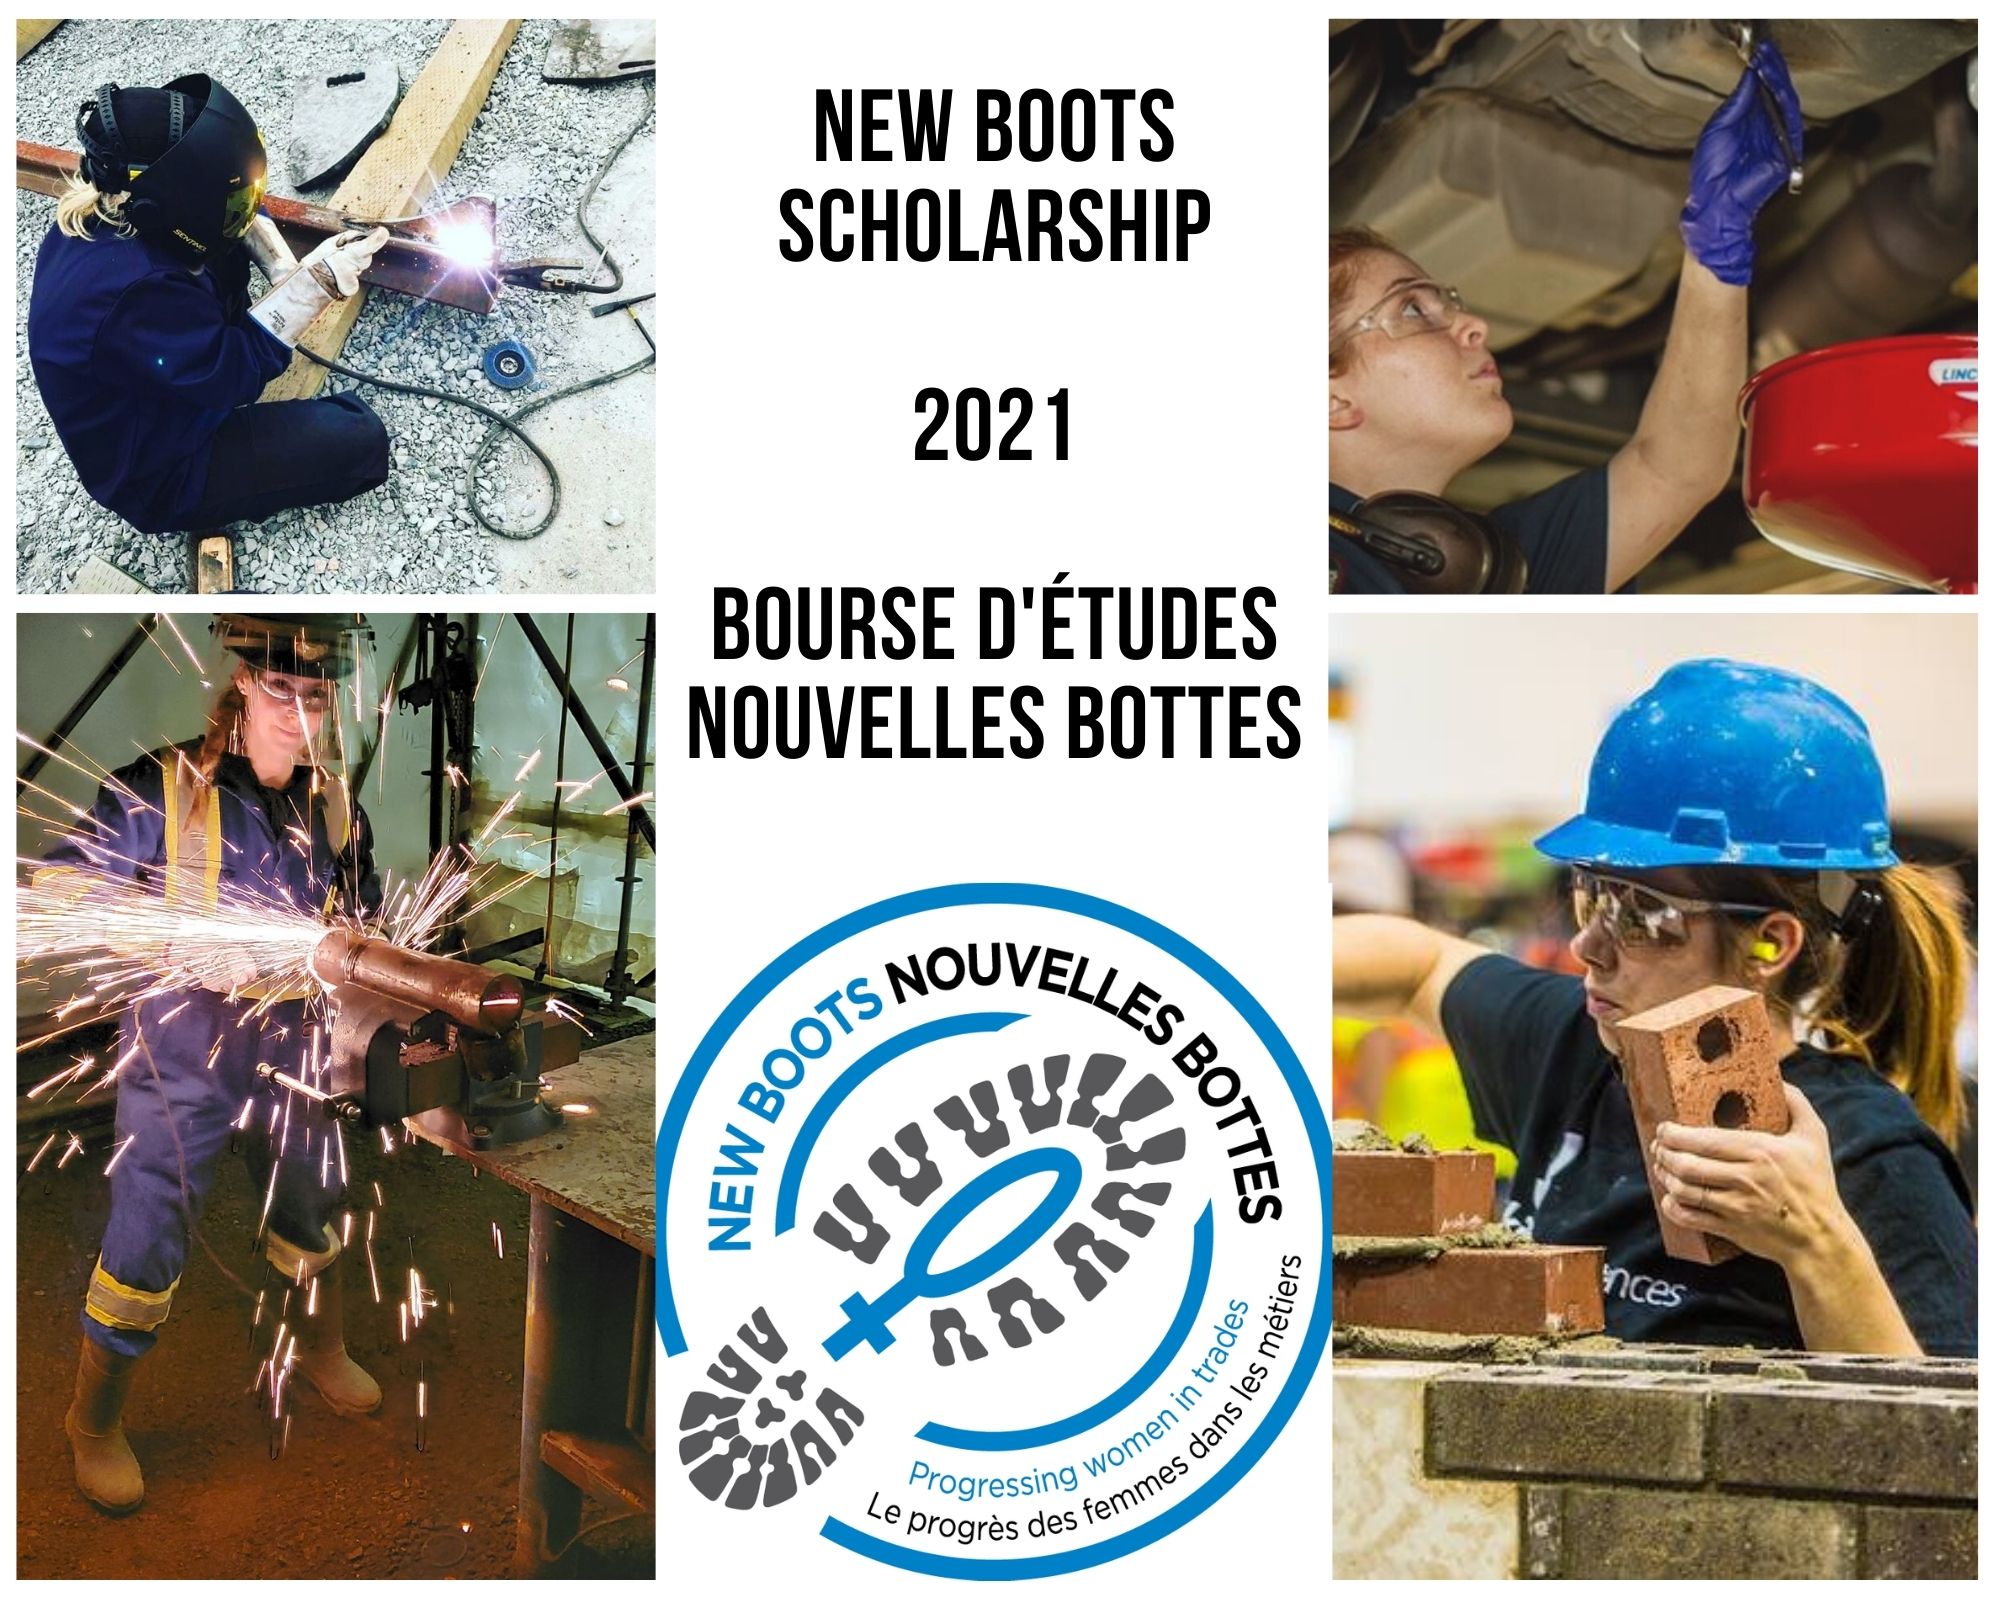 New Boots Scolarship 2021 Nouvelles Bottes Bourse d'études (OFFICIAL).jpg